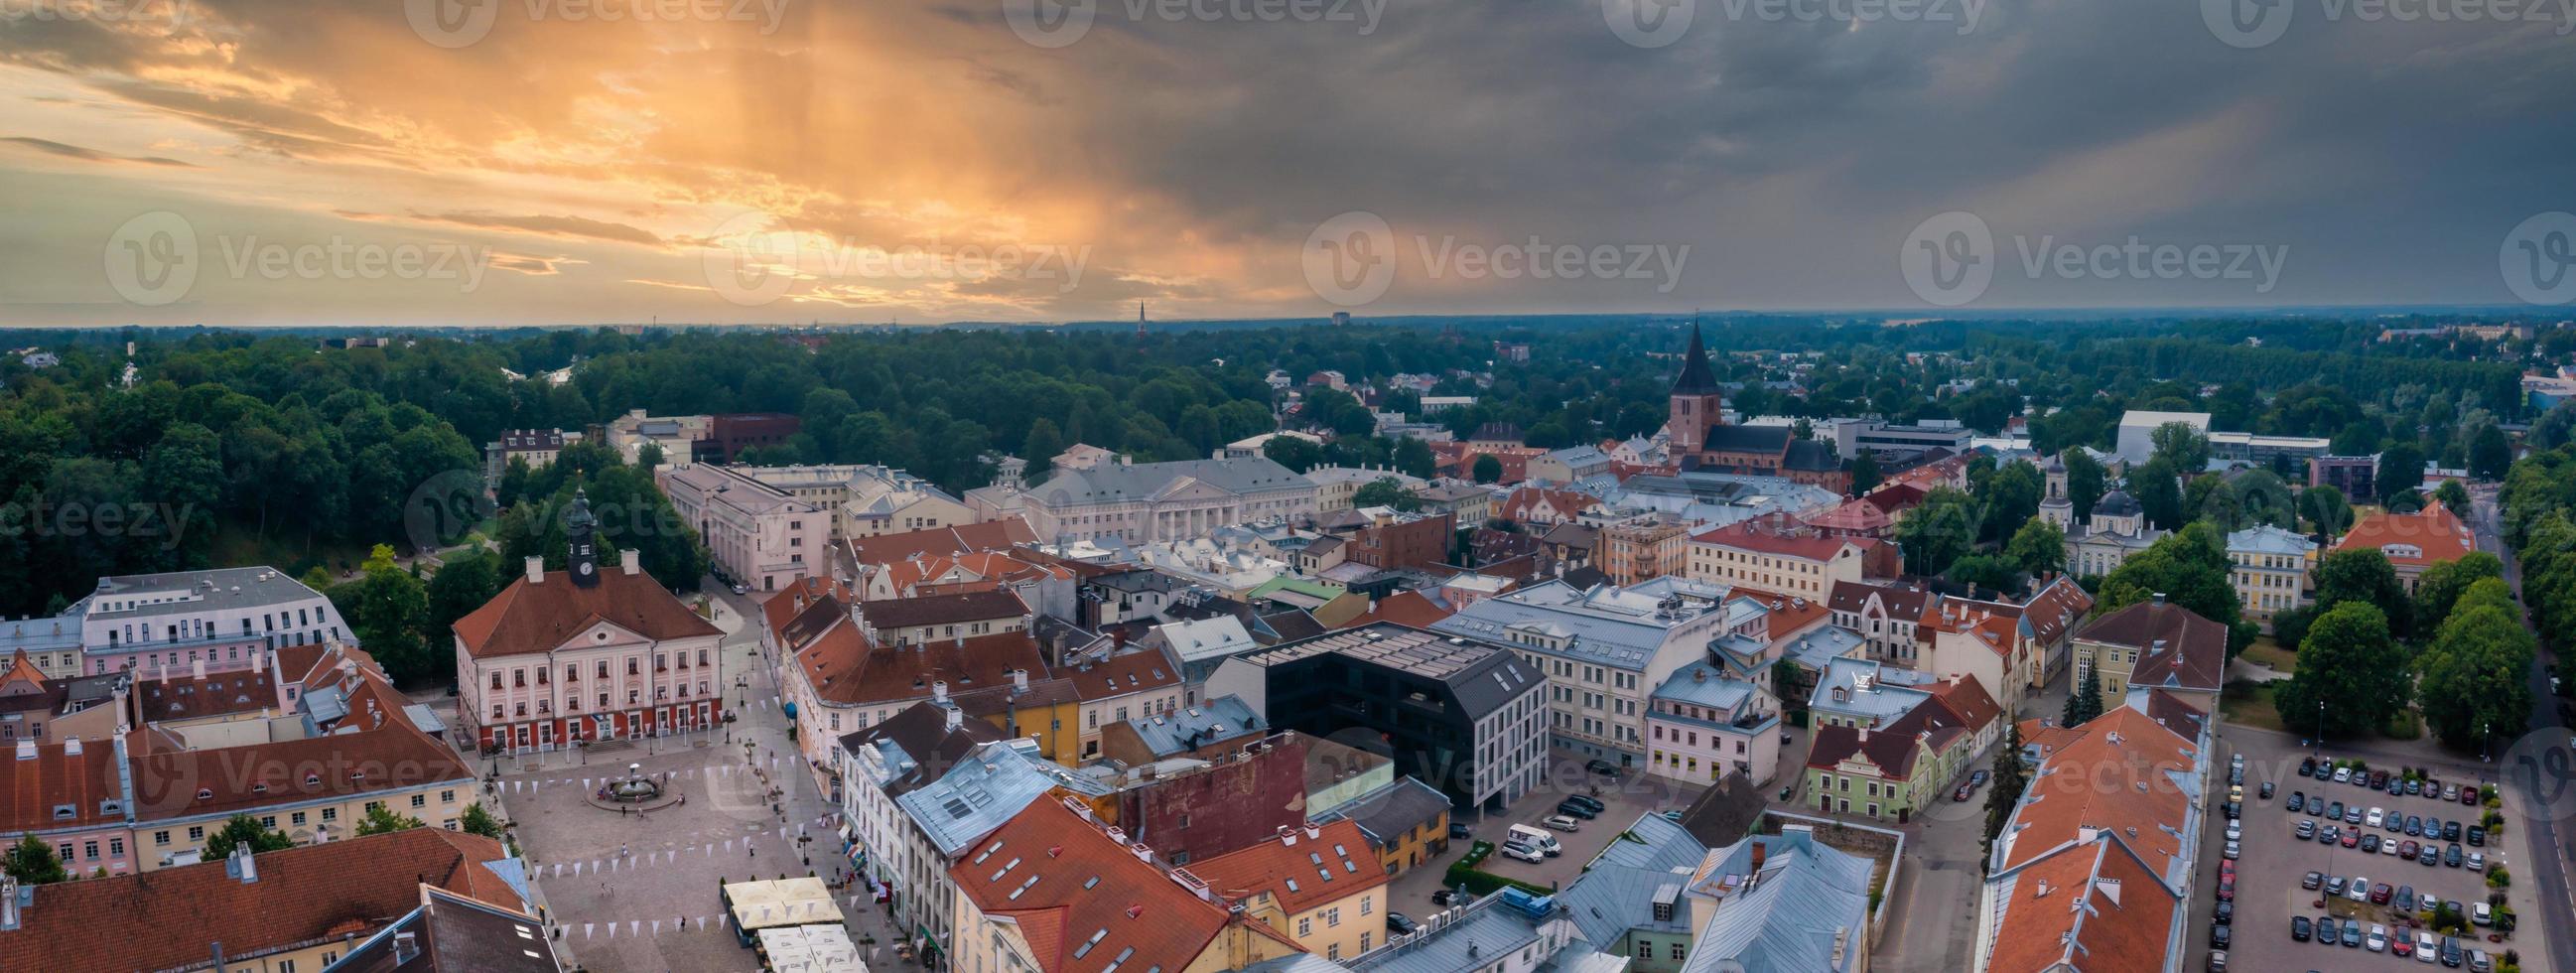 paesaggio urbano della città di tartu in estonia. foto